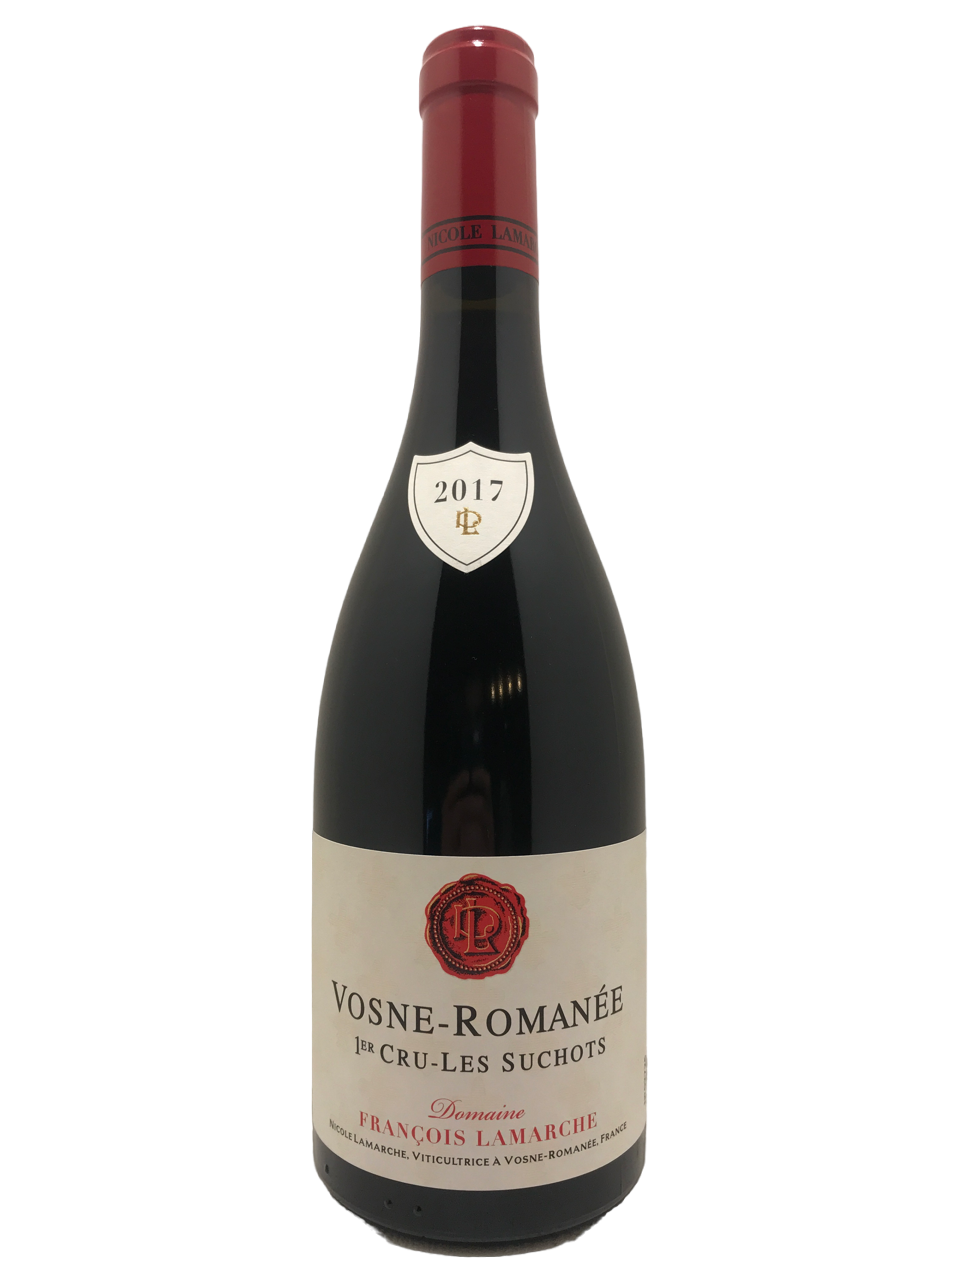 vin de bourgogne burgundy wine domaine nicole lamarche vin biodynamie organic wine vosne romanée 1er cru les suchots pinot noir